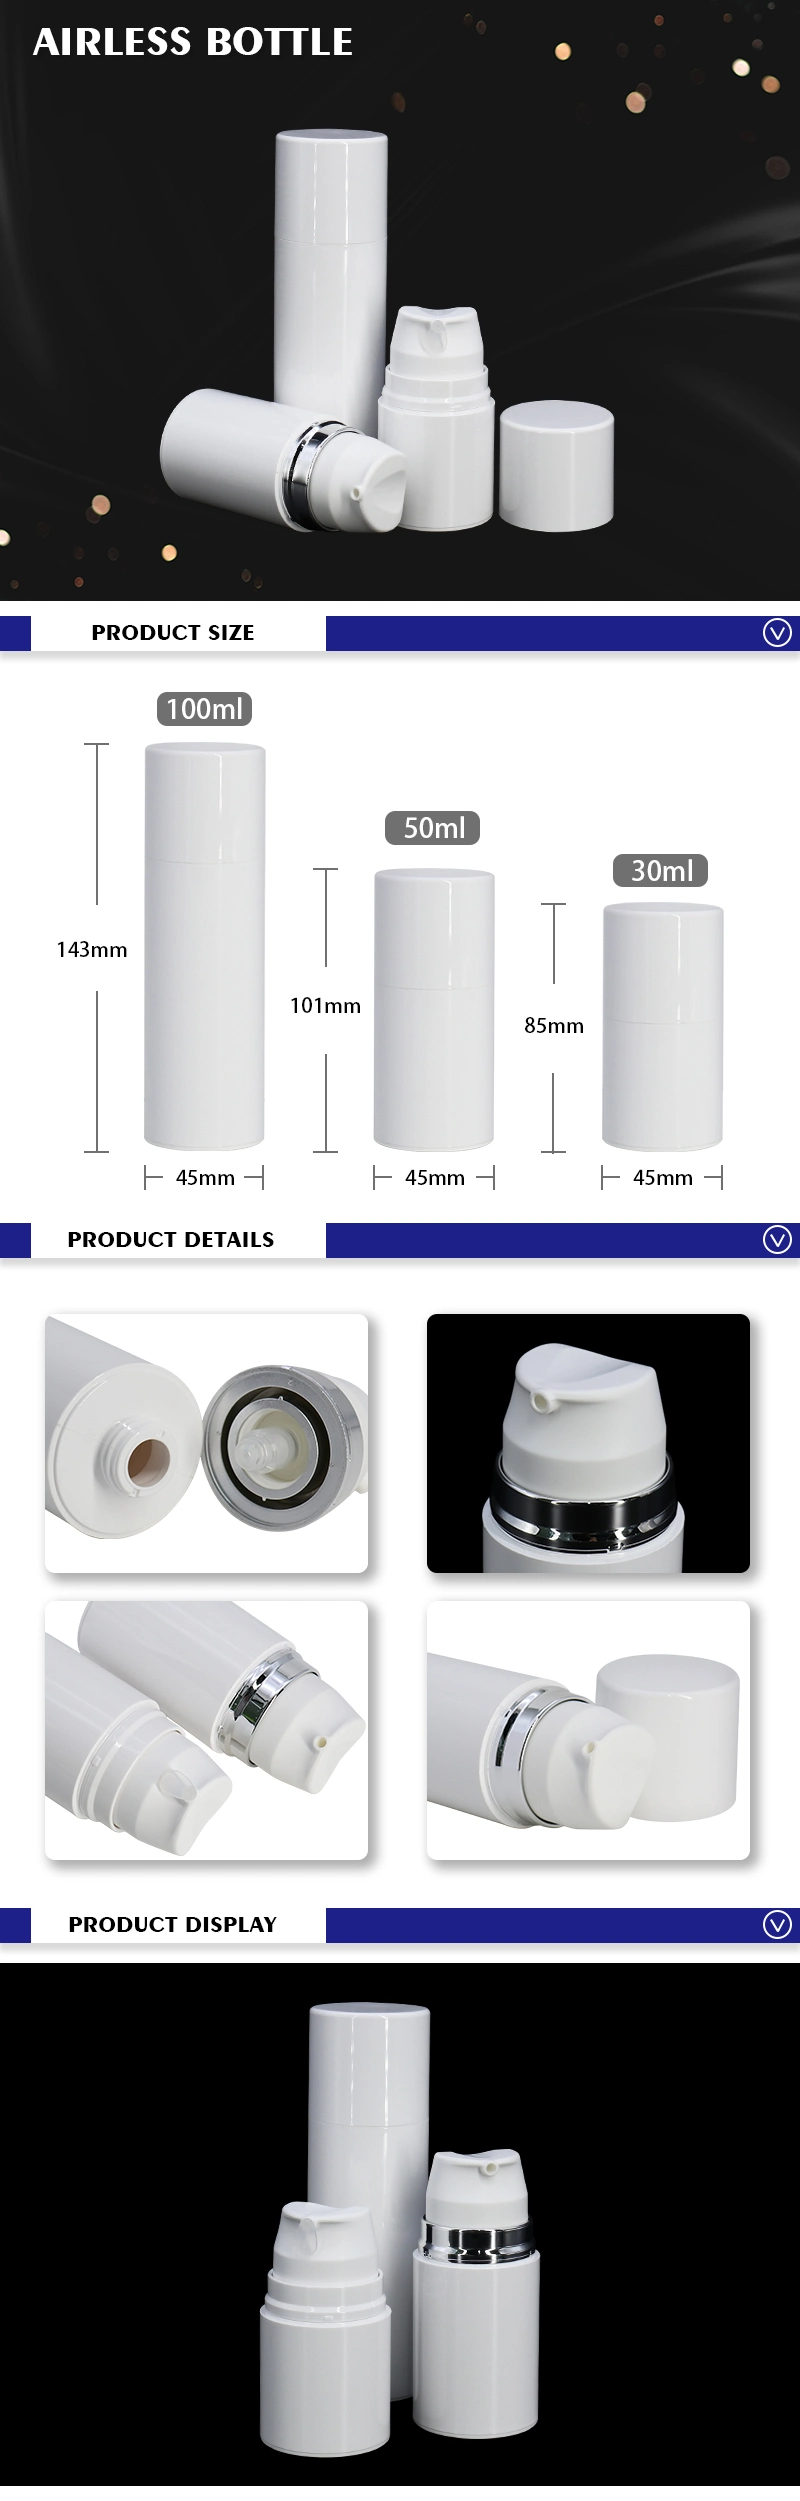 30ml, 50ml, 100ml Plastic Airless Cream Lotion Bottles White Press Pump Bottle